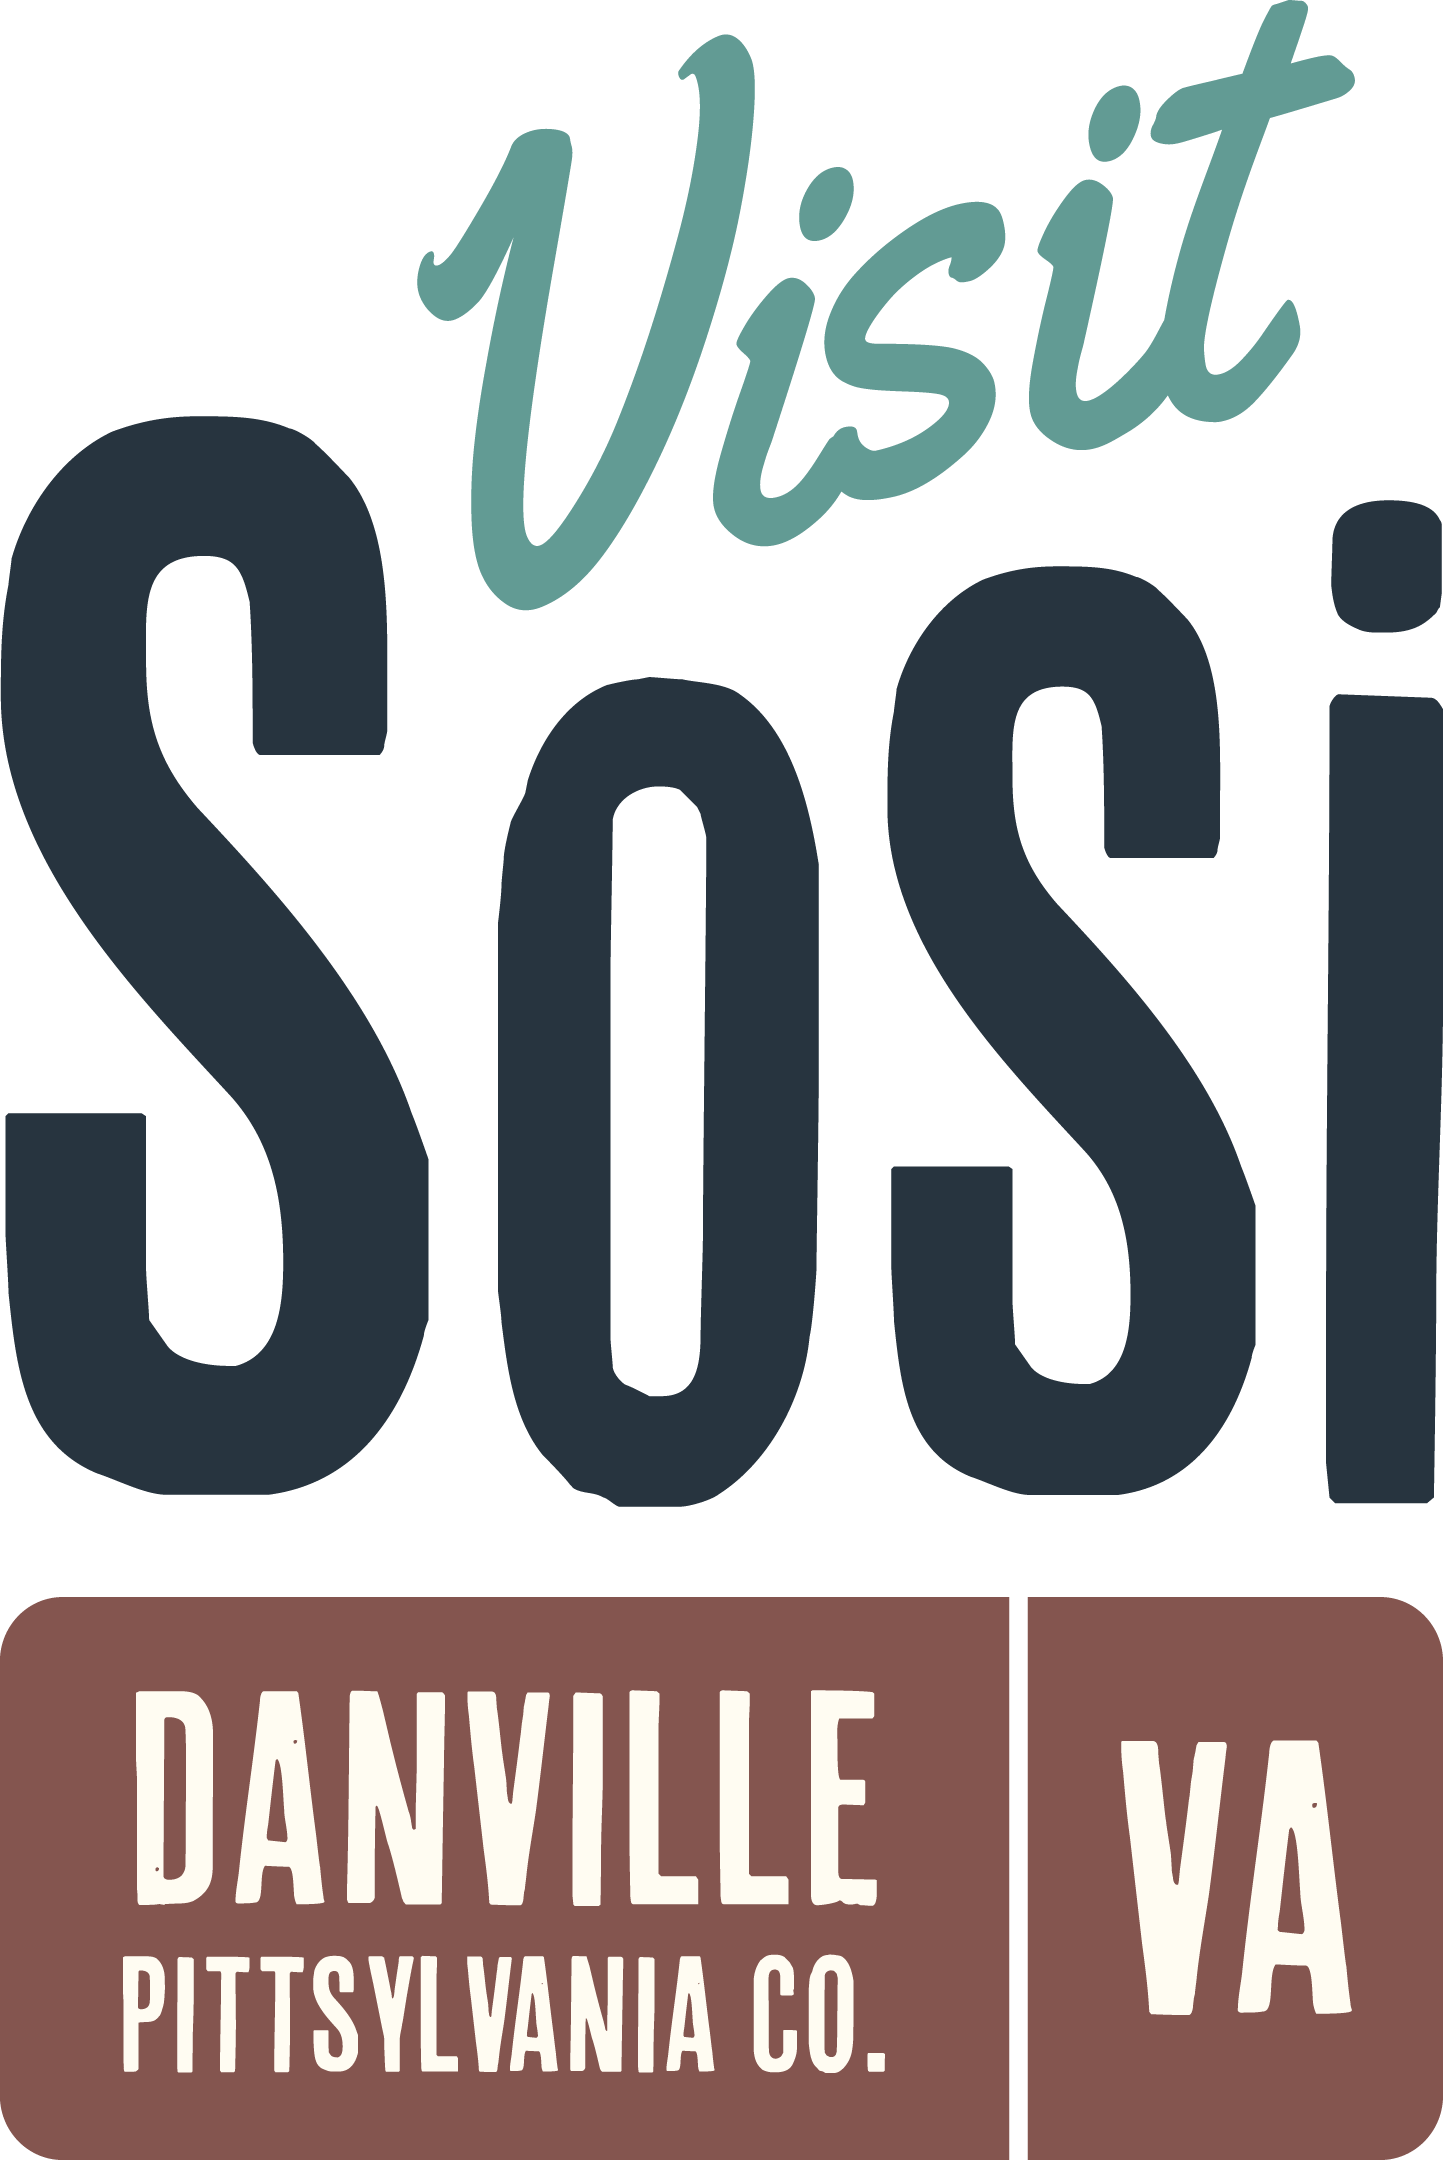 SoSi_Primary Logo_Moss and Dan River